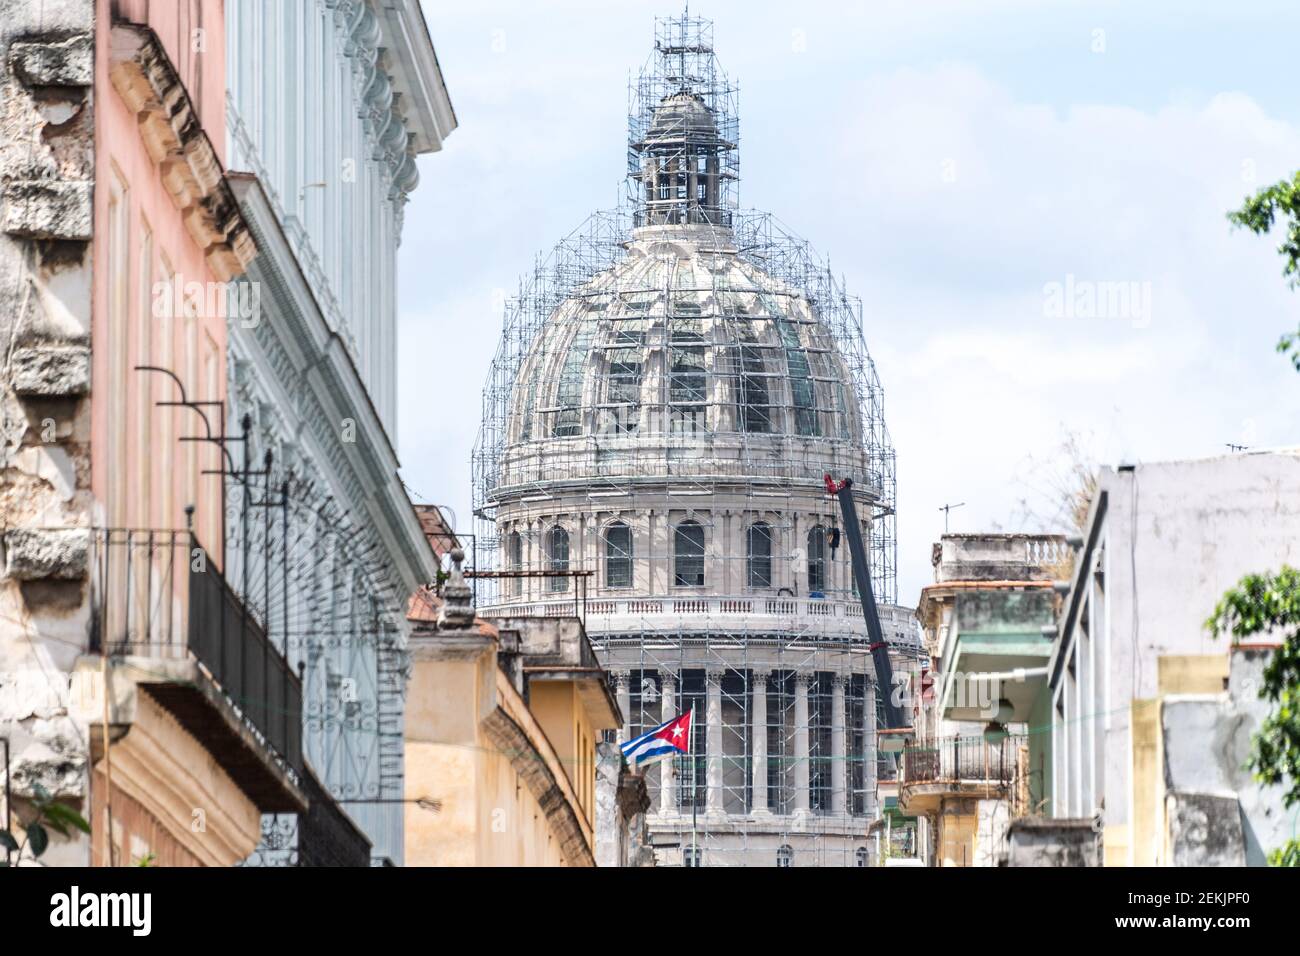 Bâtiment El Capitolio en rénovation ou revitalisation, la Havane, Cuba, 2017 Banque D'Images